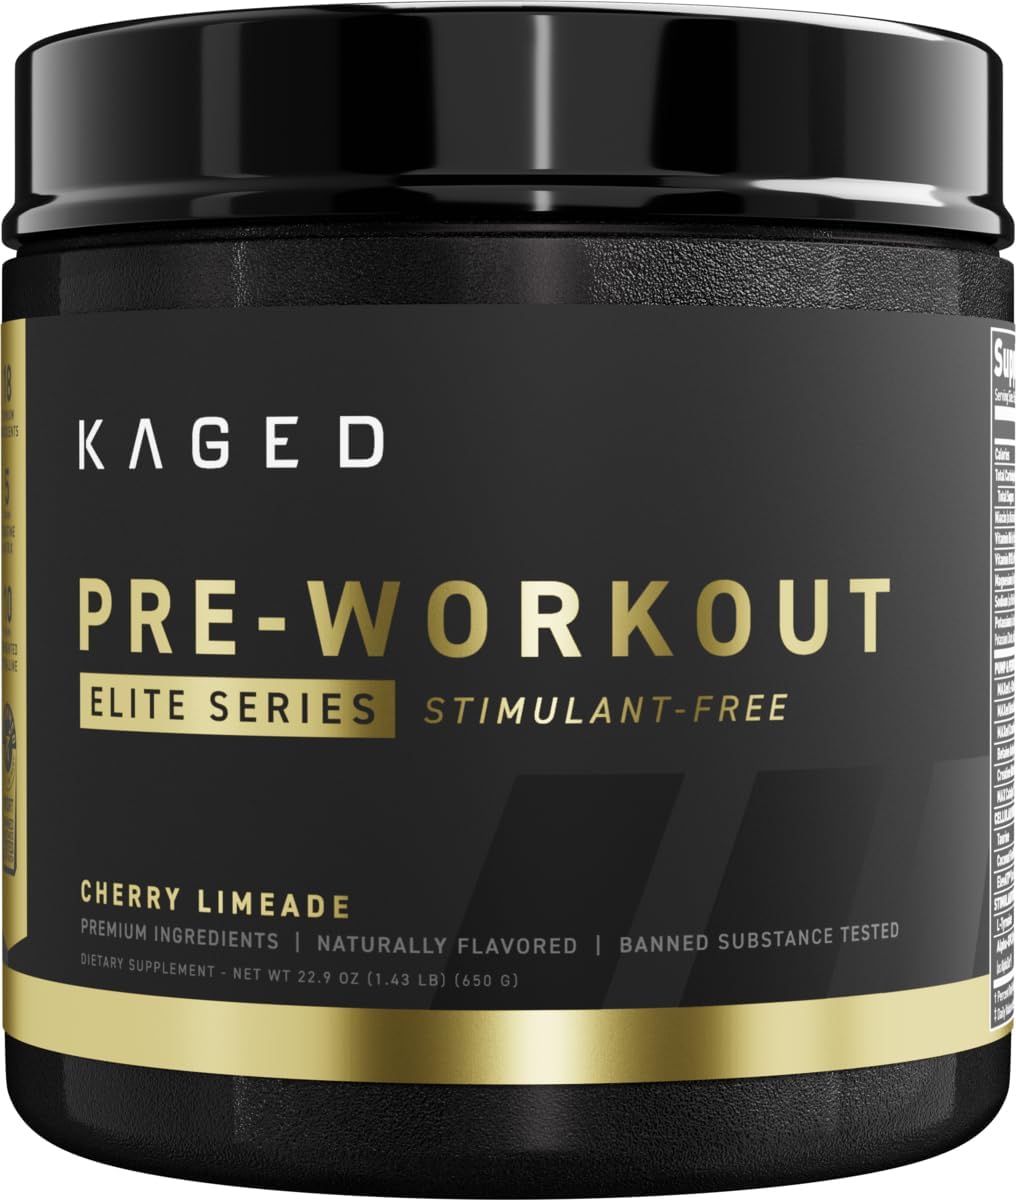 Kaged Pre Workout Powder Pre-Workout Elite Stim-Free for Men & Women |